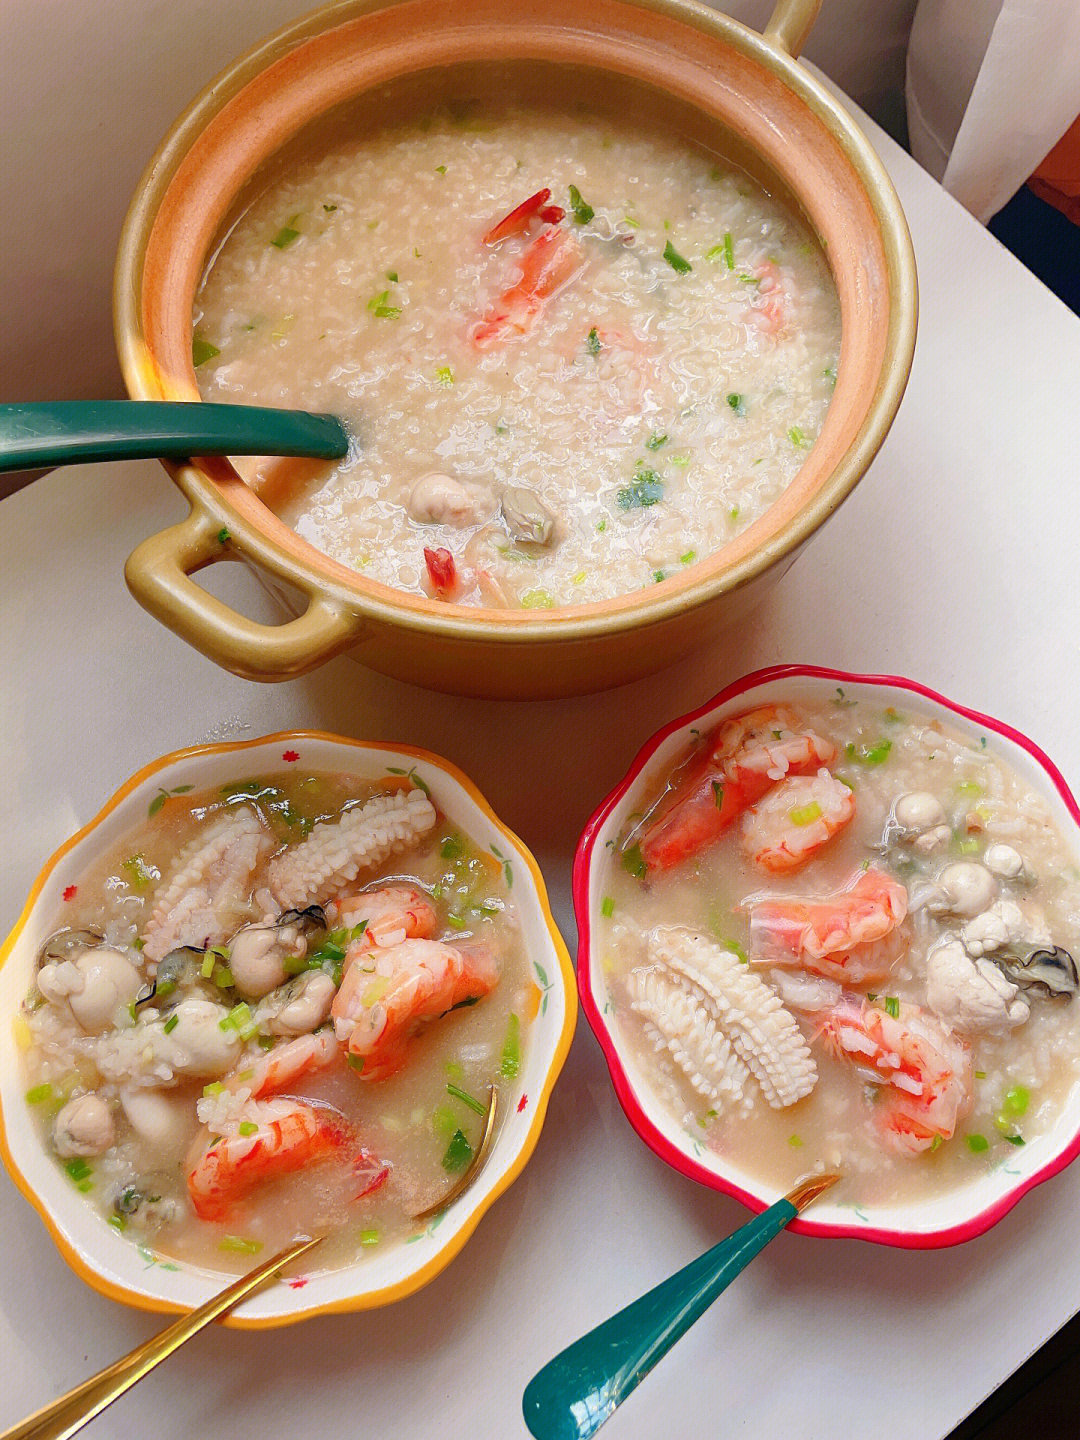 料足的砂锅粥,真的很满足啊～做法如下:(1)把鲜虾去头后开边(2)生蚝用